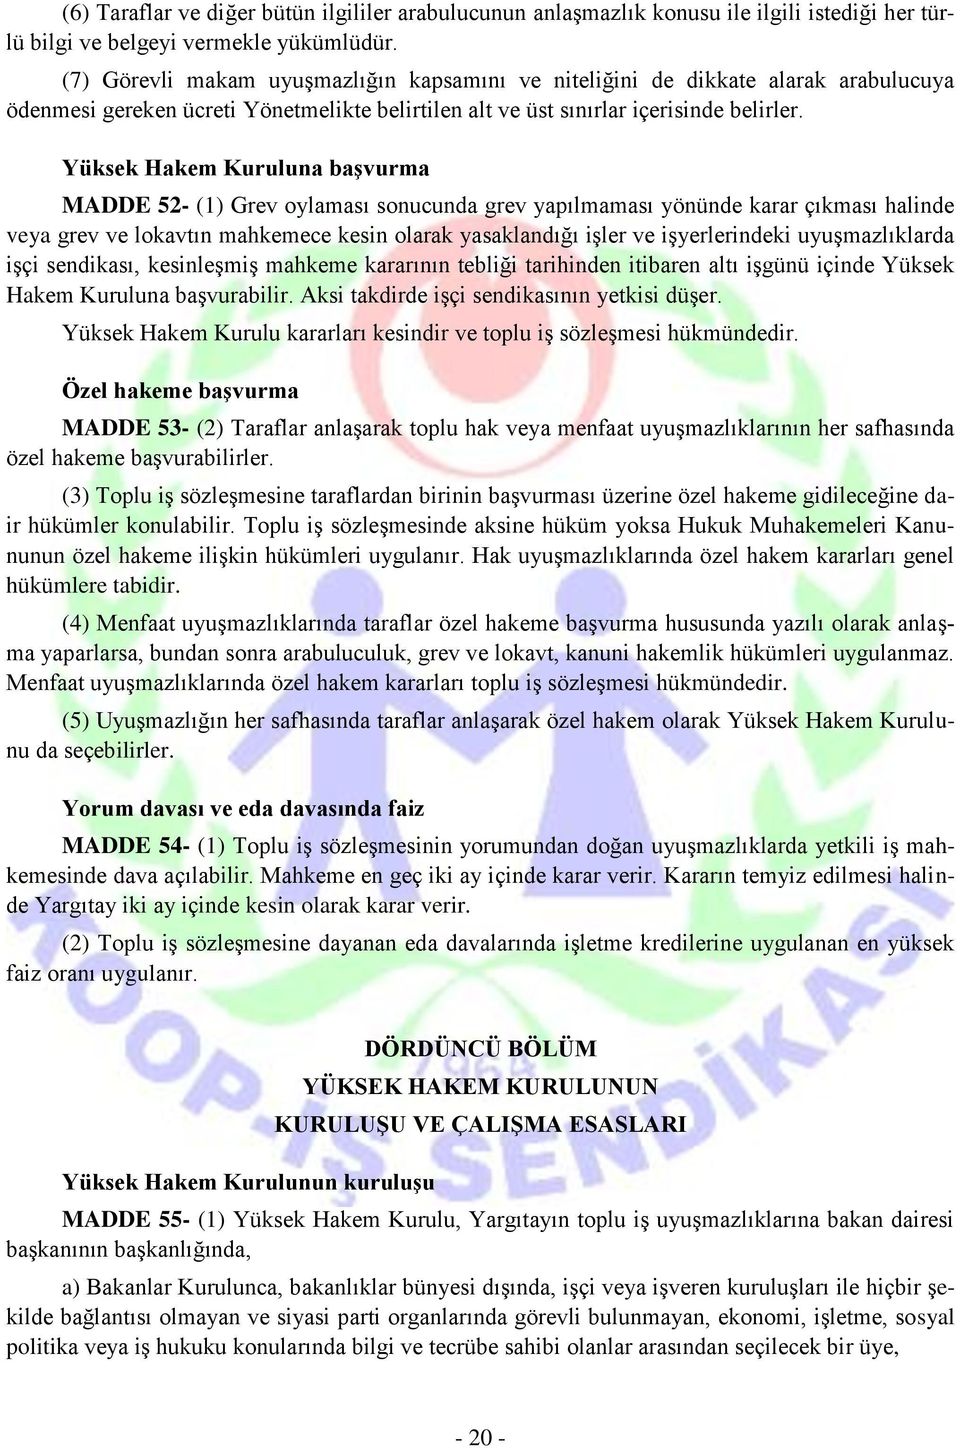 Yüksek Hakem Kuruluna başvurma MADDE 52- (1) Grev oylaması sonucunda grev yapılmaması yönünde karar çıkması halinde veya grev ve lokavtın mahkemece kesin olarak yasaklandığı işler ve işyerlerindeki